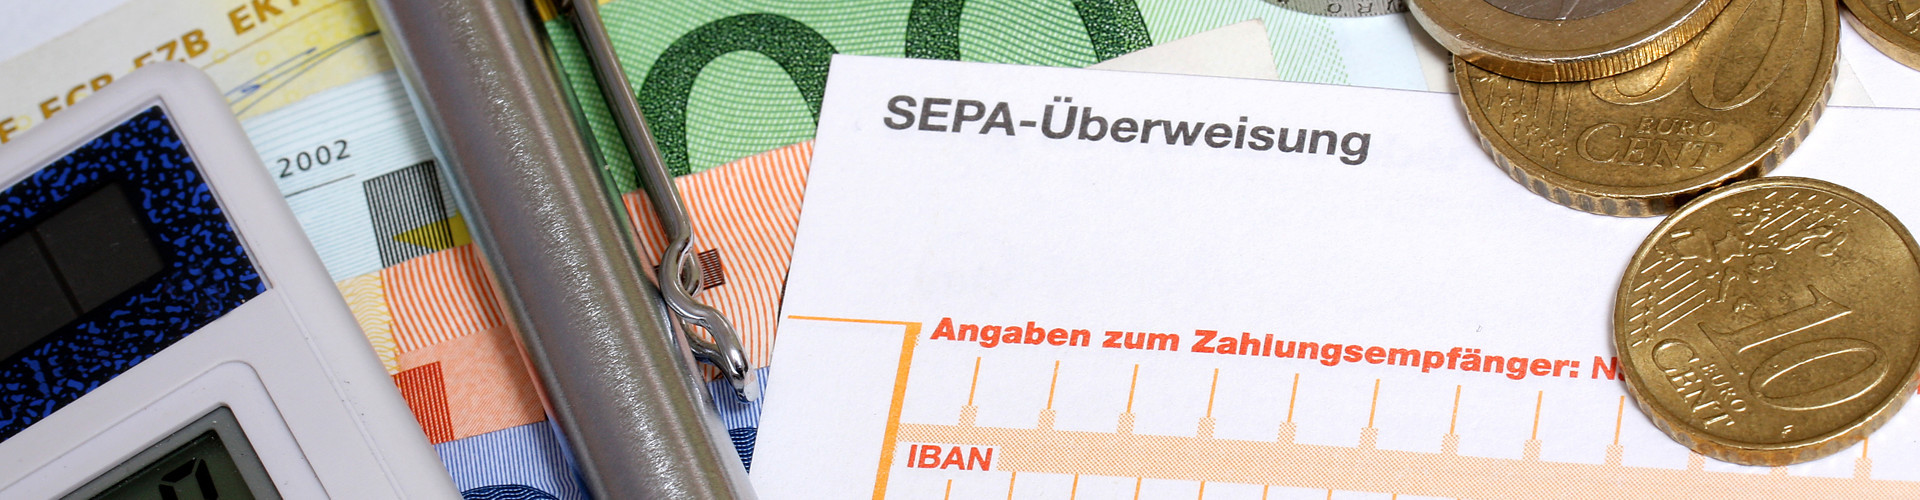 Auf mehreren Geldscheinen liegen Taschenrechner, Kugelschreiber, einige Euromünzen und ein Erlagschein. Zu erkennen ist die Aufschrift "SEPA-Überweisung". © RRF, stock.adobe.com